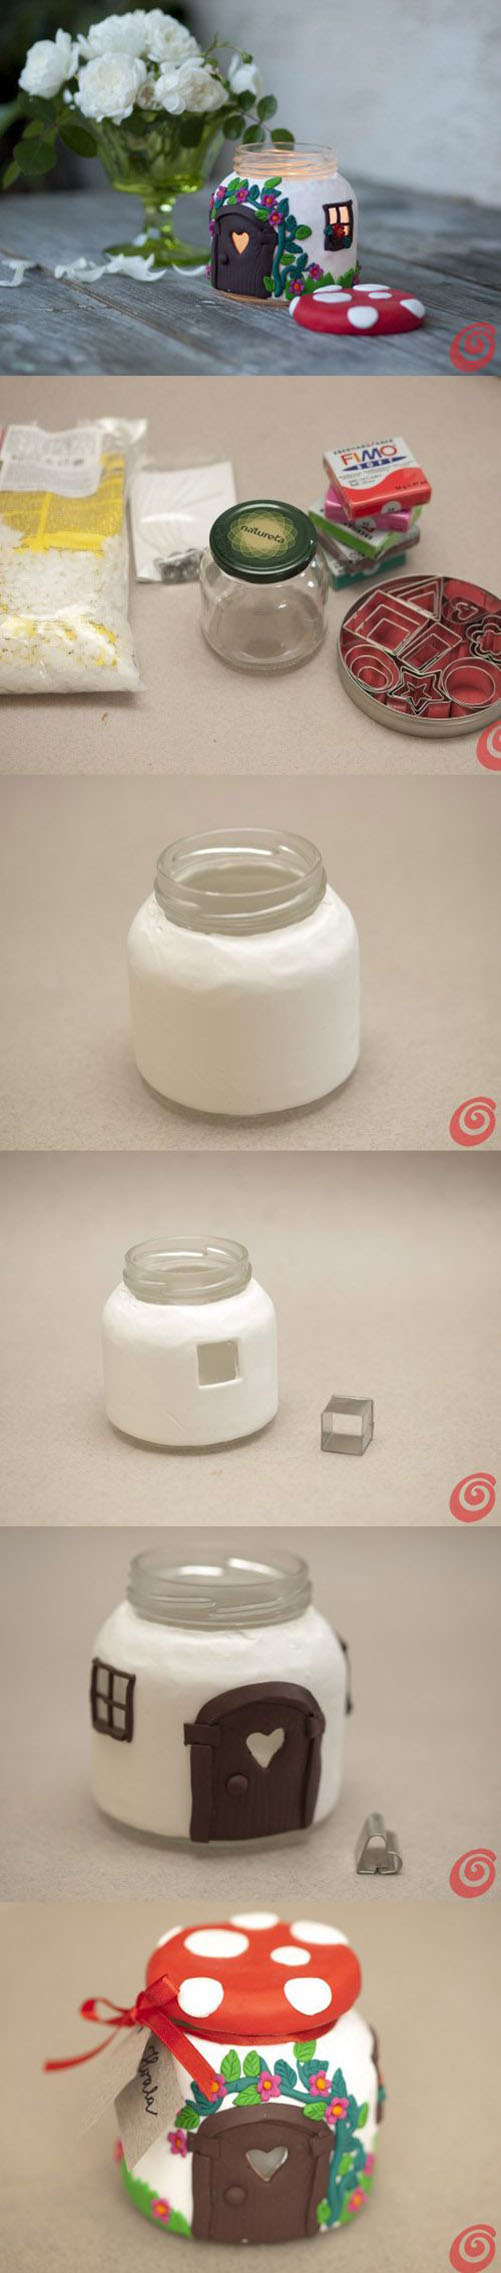 10  DIY Jar Mushroom House Tea Light Holder2c0